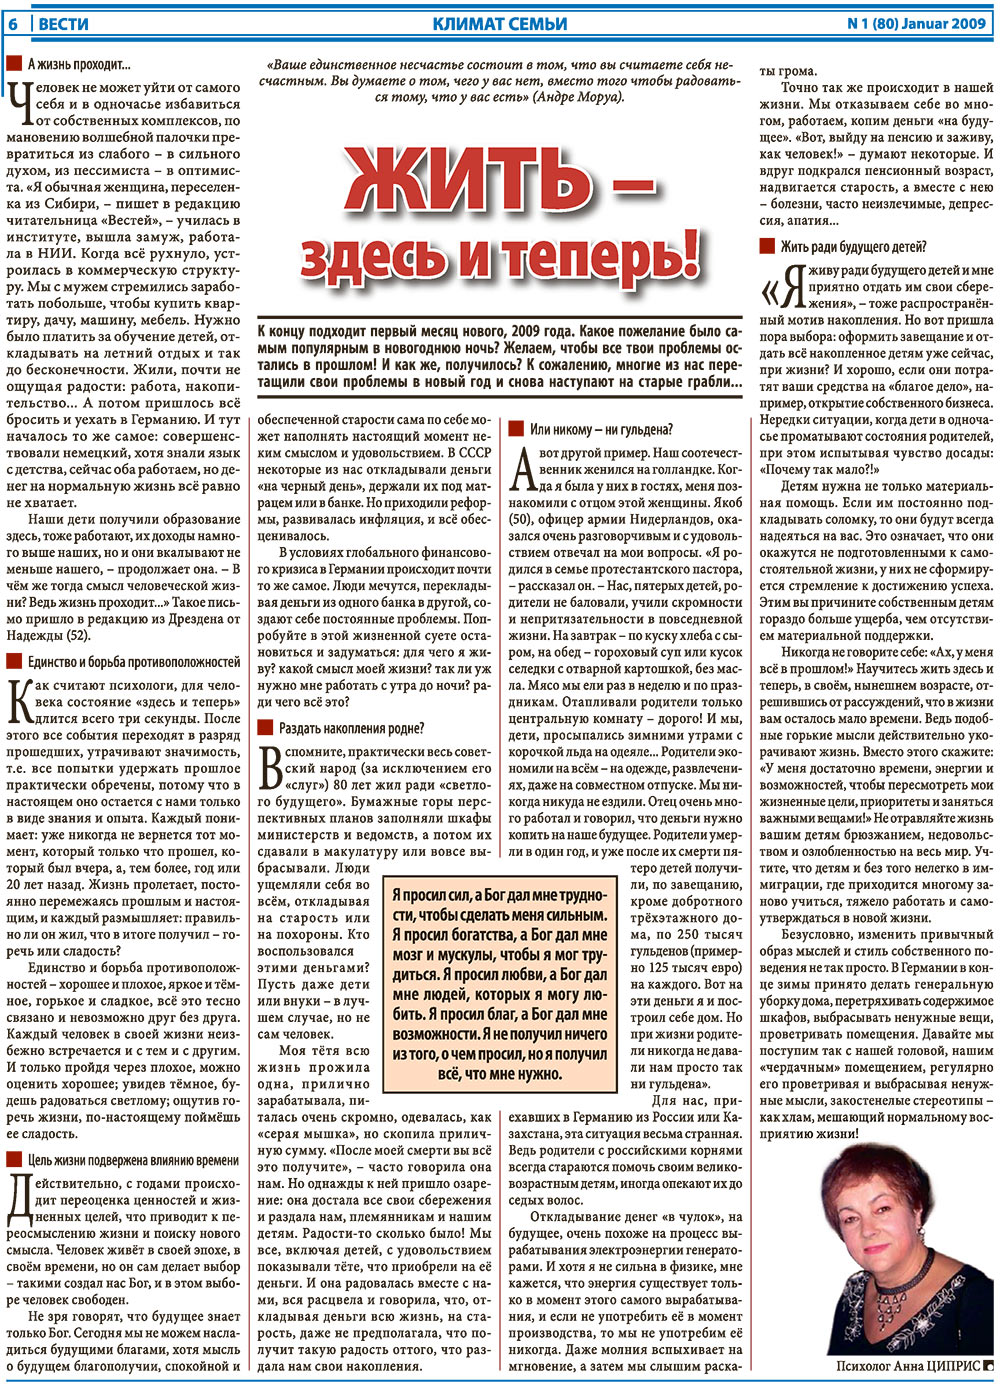 Вести, газета. 2009 №1 стр.6